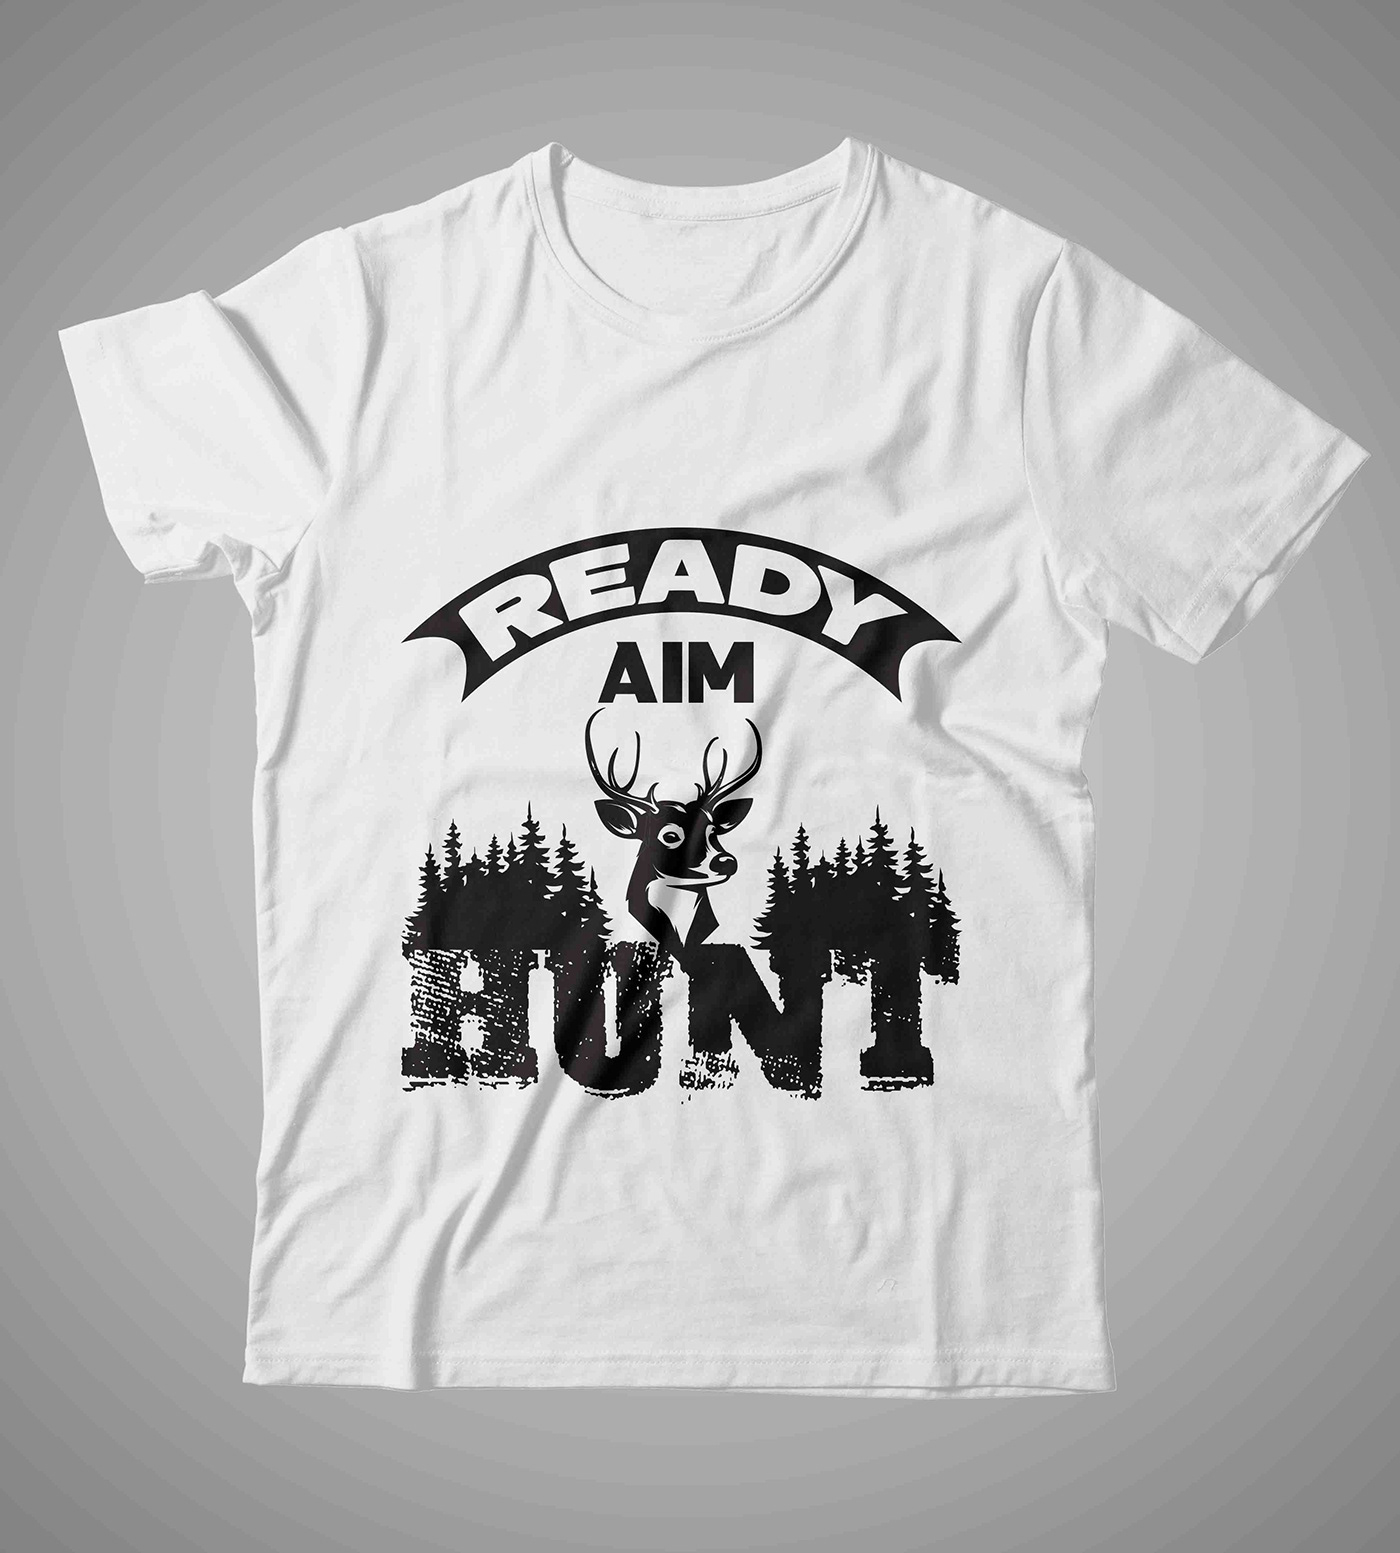 BEST T SHIRT DESIGN New T shirt t shirt design